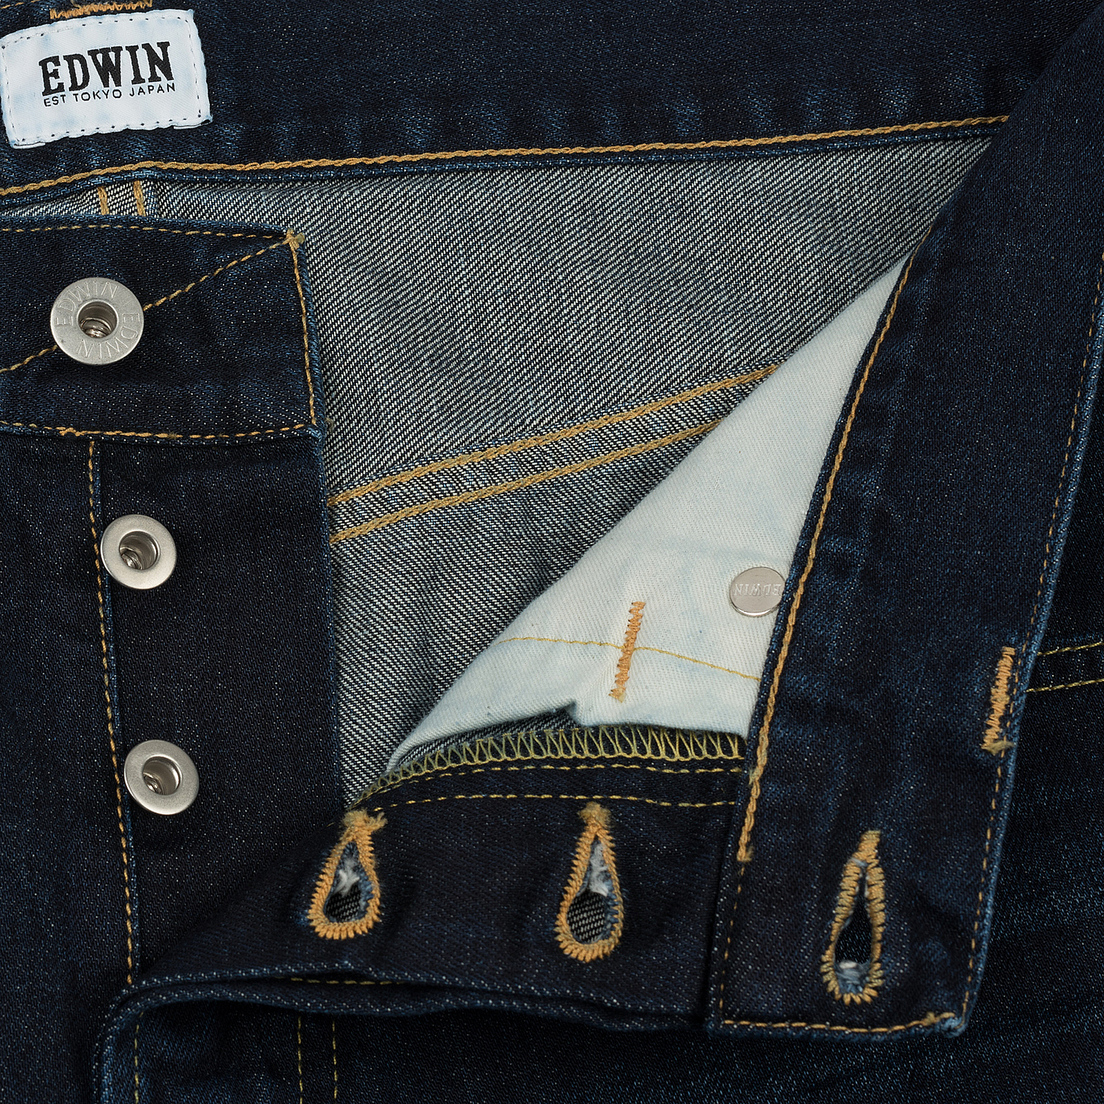 Edwin Мужские джинсы ED-55 Deep Blue Denim 11.8 Oz